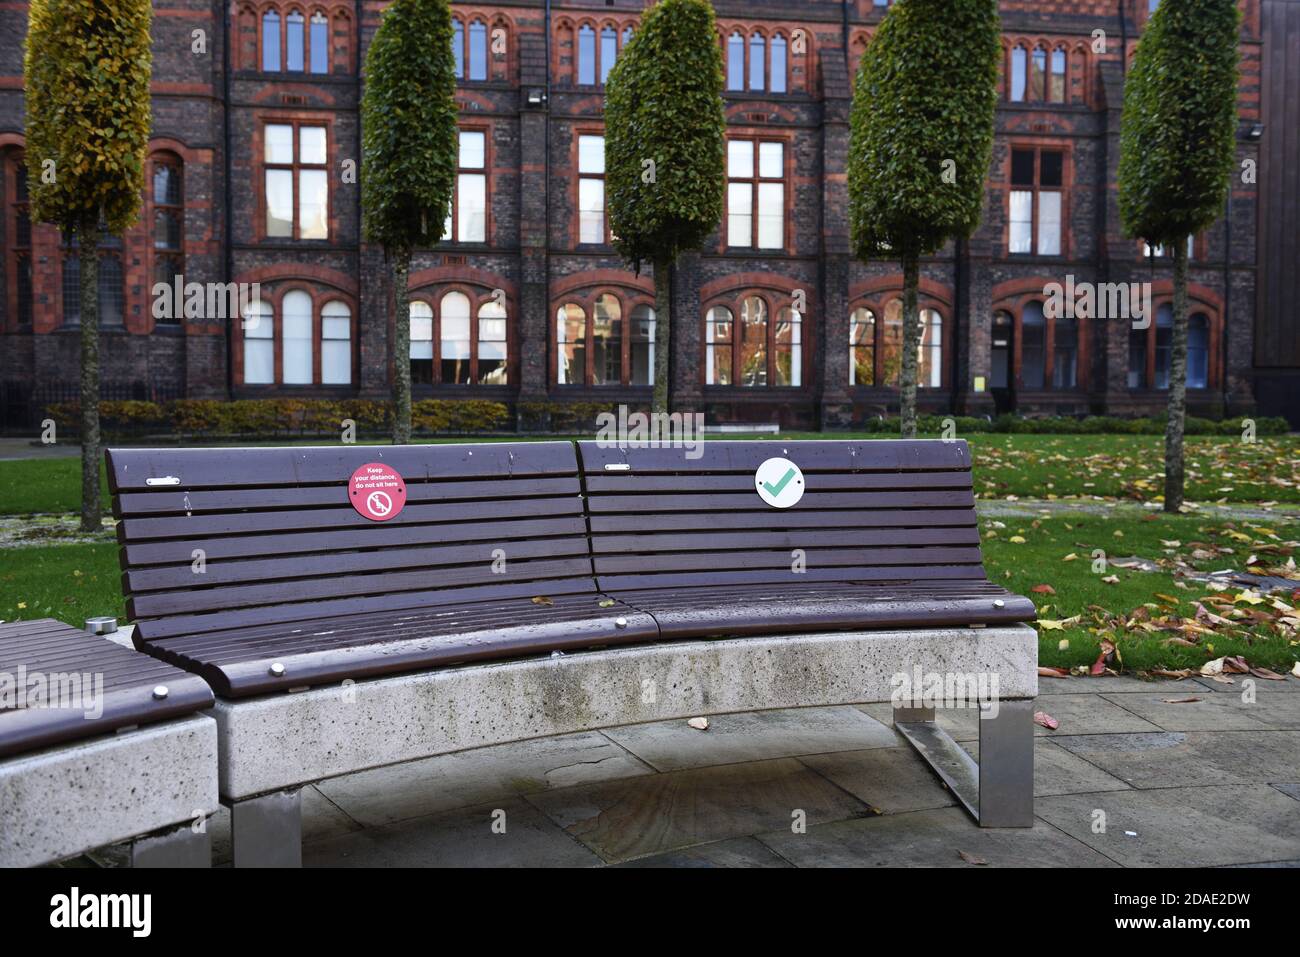 Soziale Distanzierungszeichen auf Bänken zur Förderung der sozialen Distanzierung auf dem Campus der Universität Liverpool, aufgrund des Coronavirus, covid 19 Pandemie Stockfoto